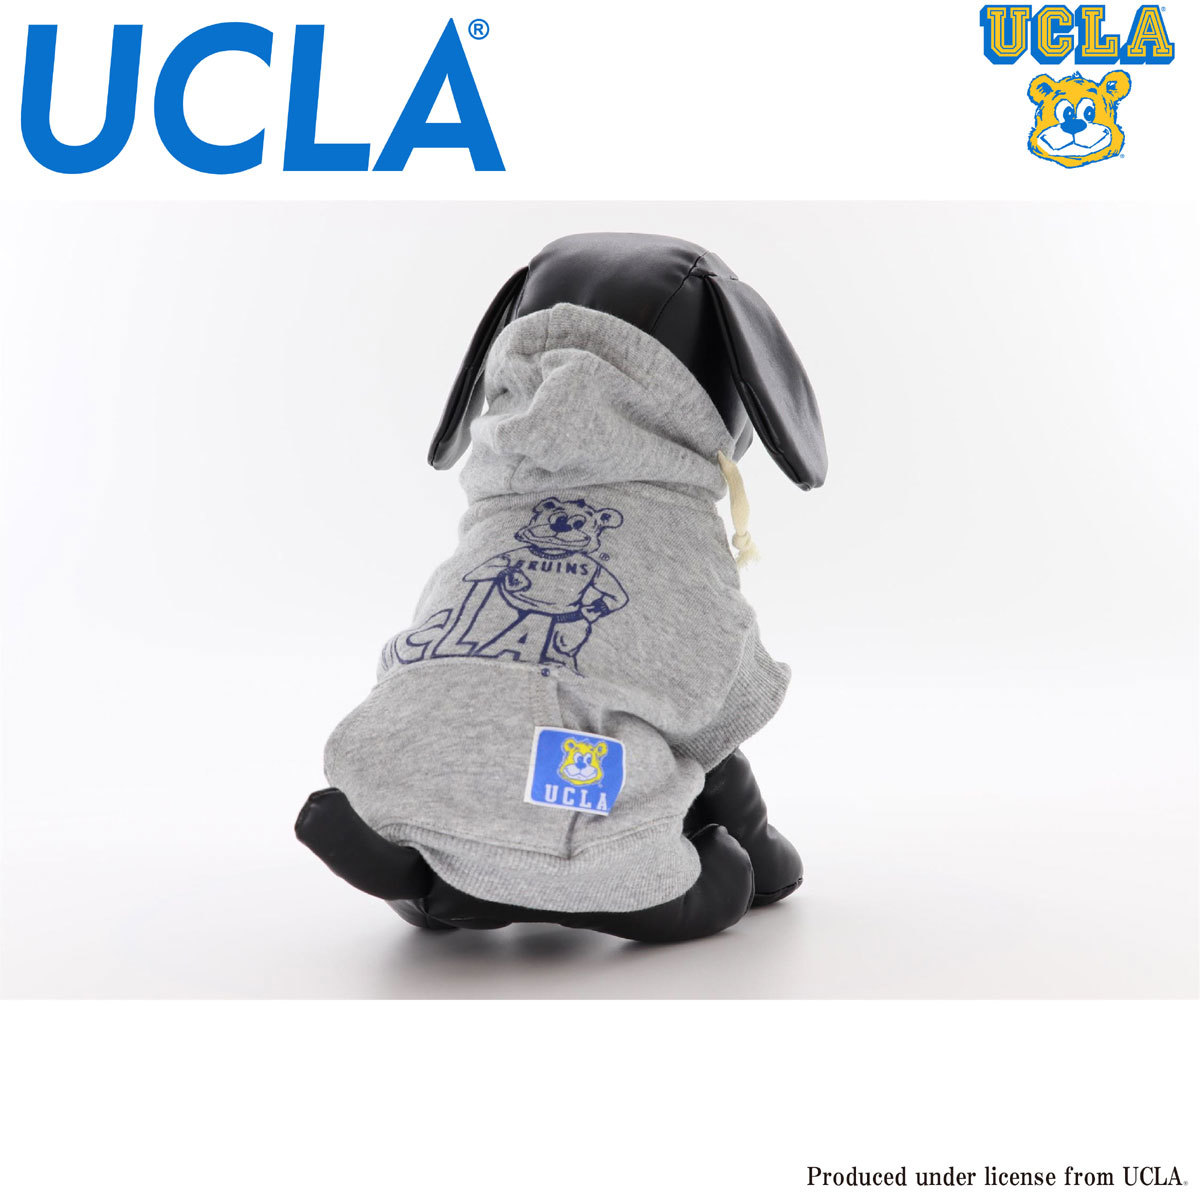 送料無料 動画有り UCLA ユーシーエルエー 犬服 パーカー ドッグウエア 引き出物 アメカジ かっこいい セール特価 UCLA-0401 かわいい カレッジ